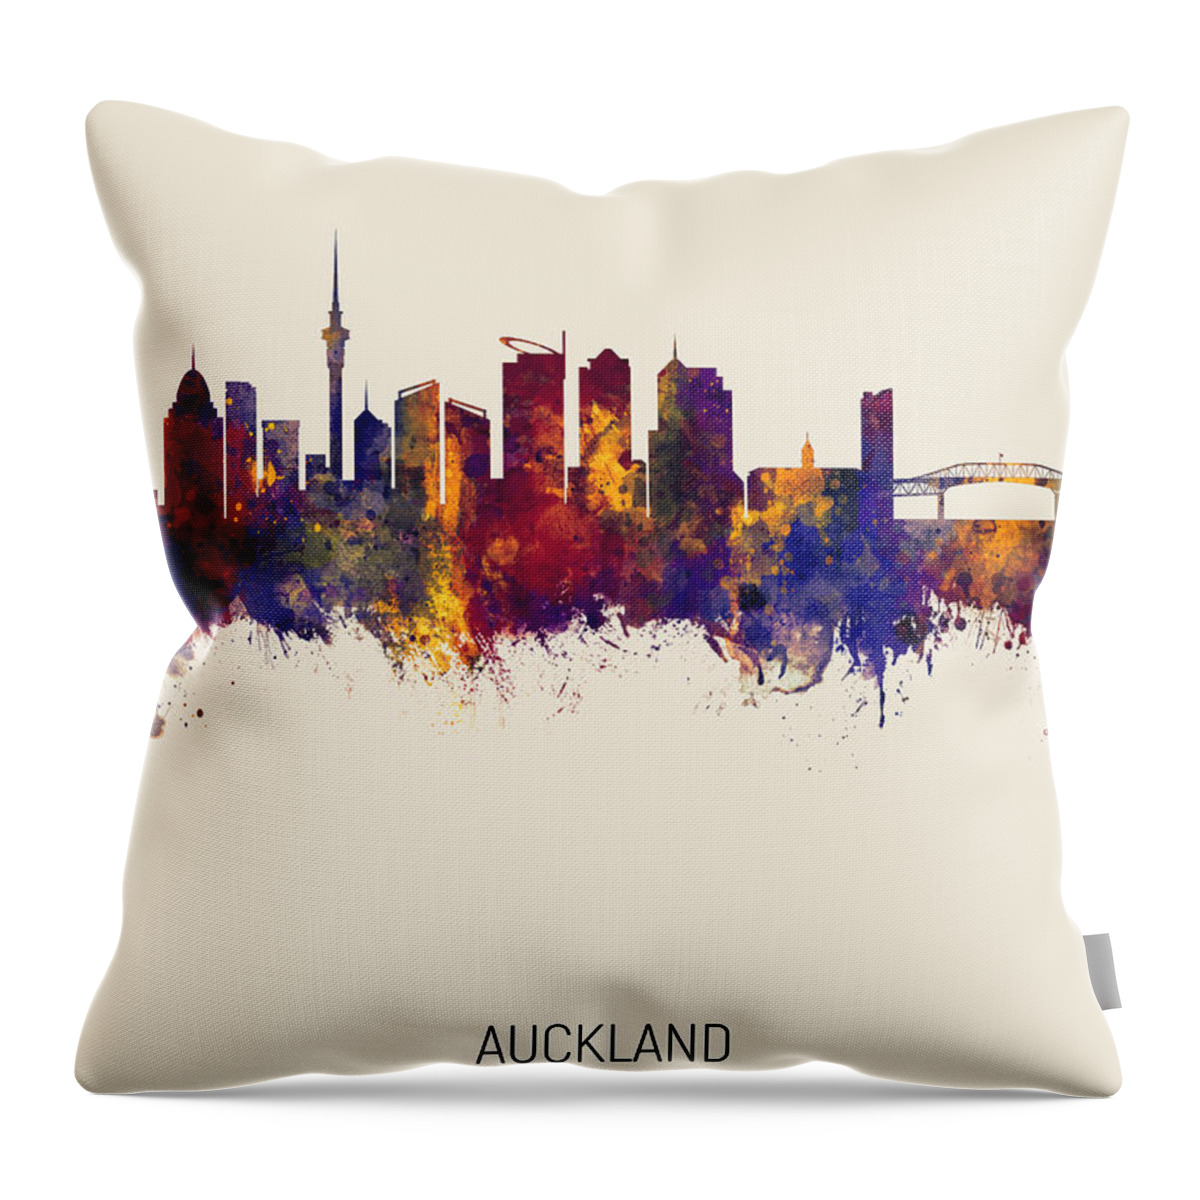 Auckland Throw Pillow featuring the digital art Auckland New Zealand Skyline #20 by Michael Tompsett